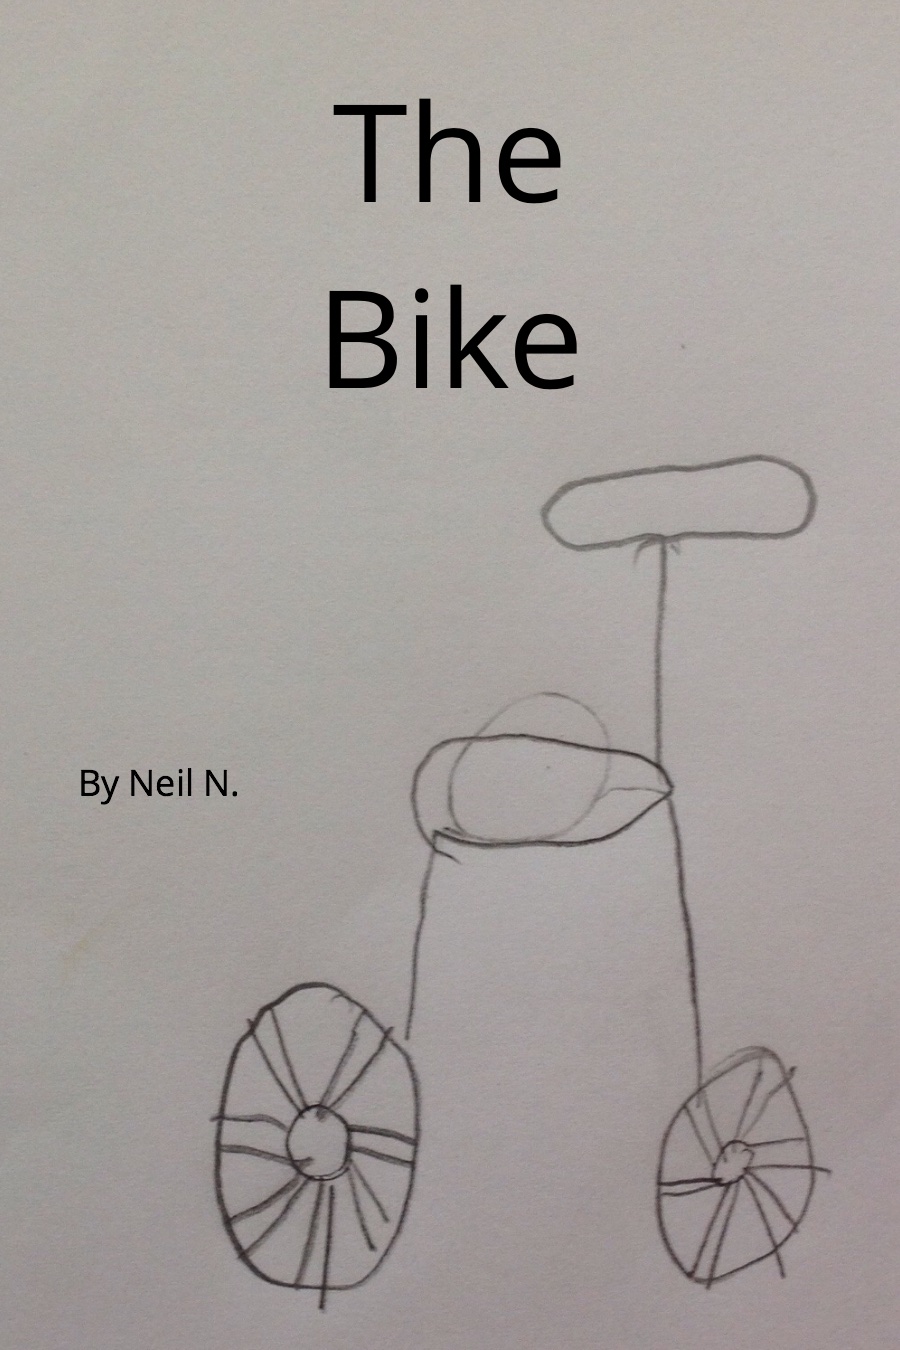 The Bike by Neil N